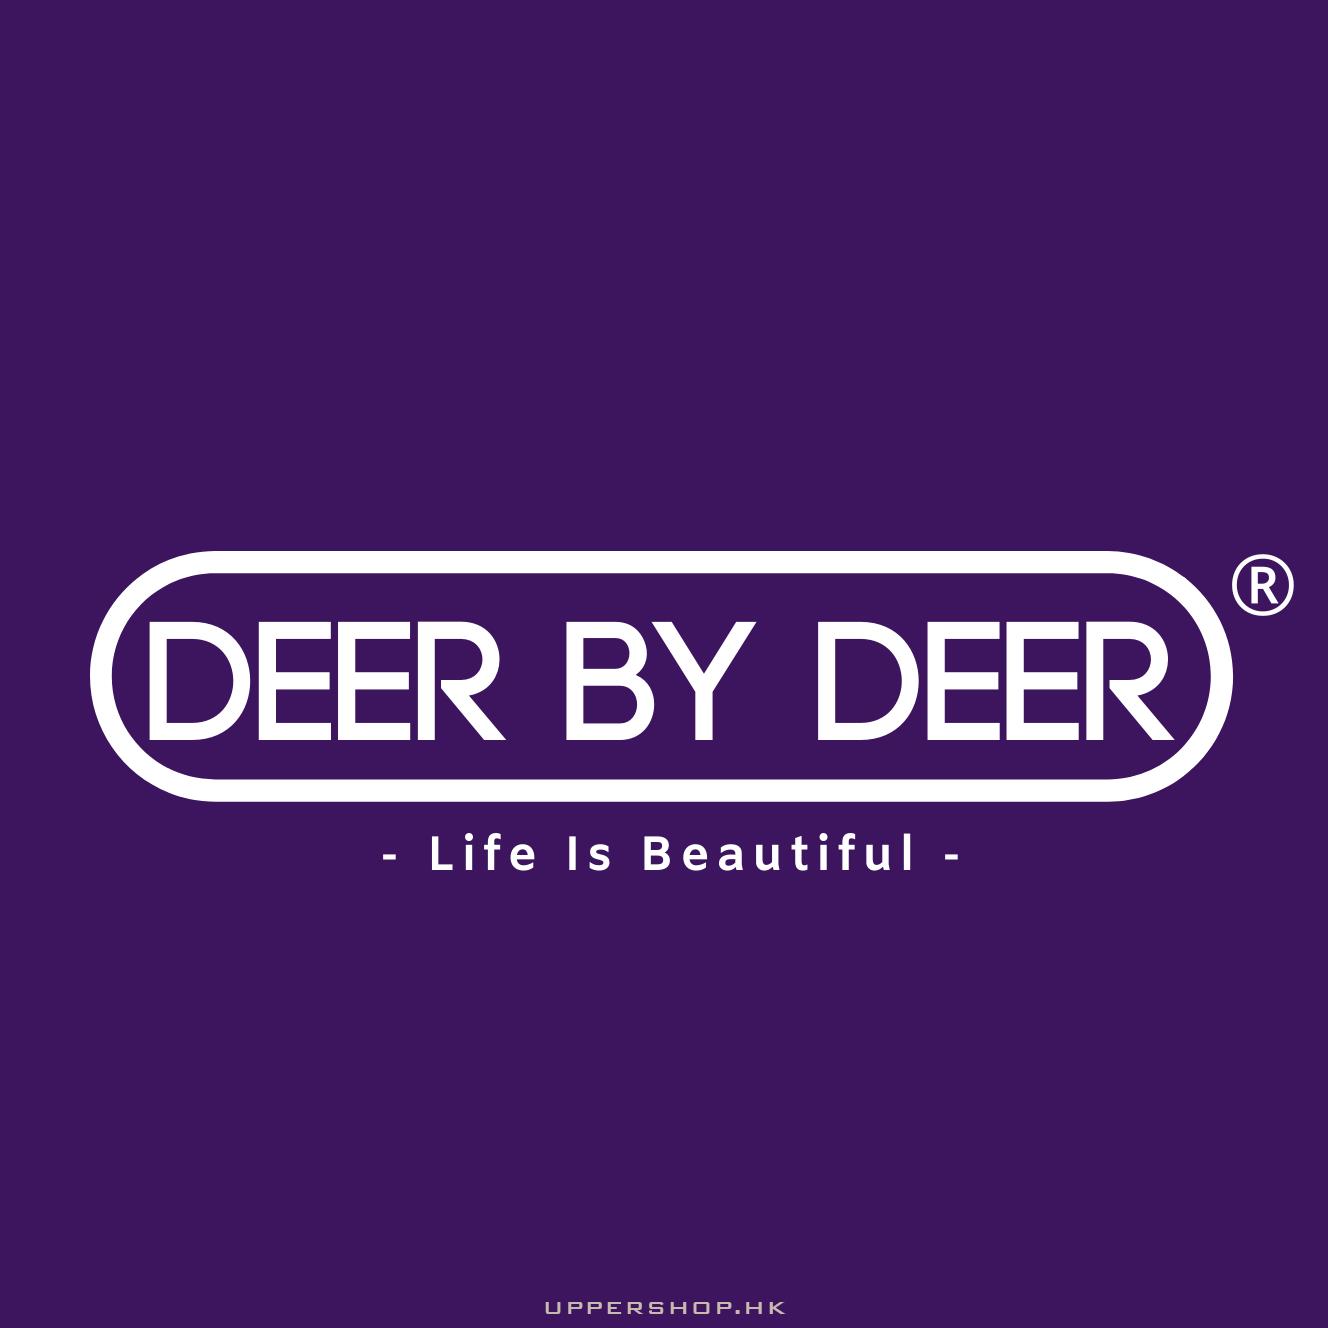 Deer By Deer